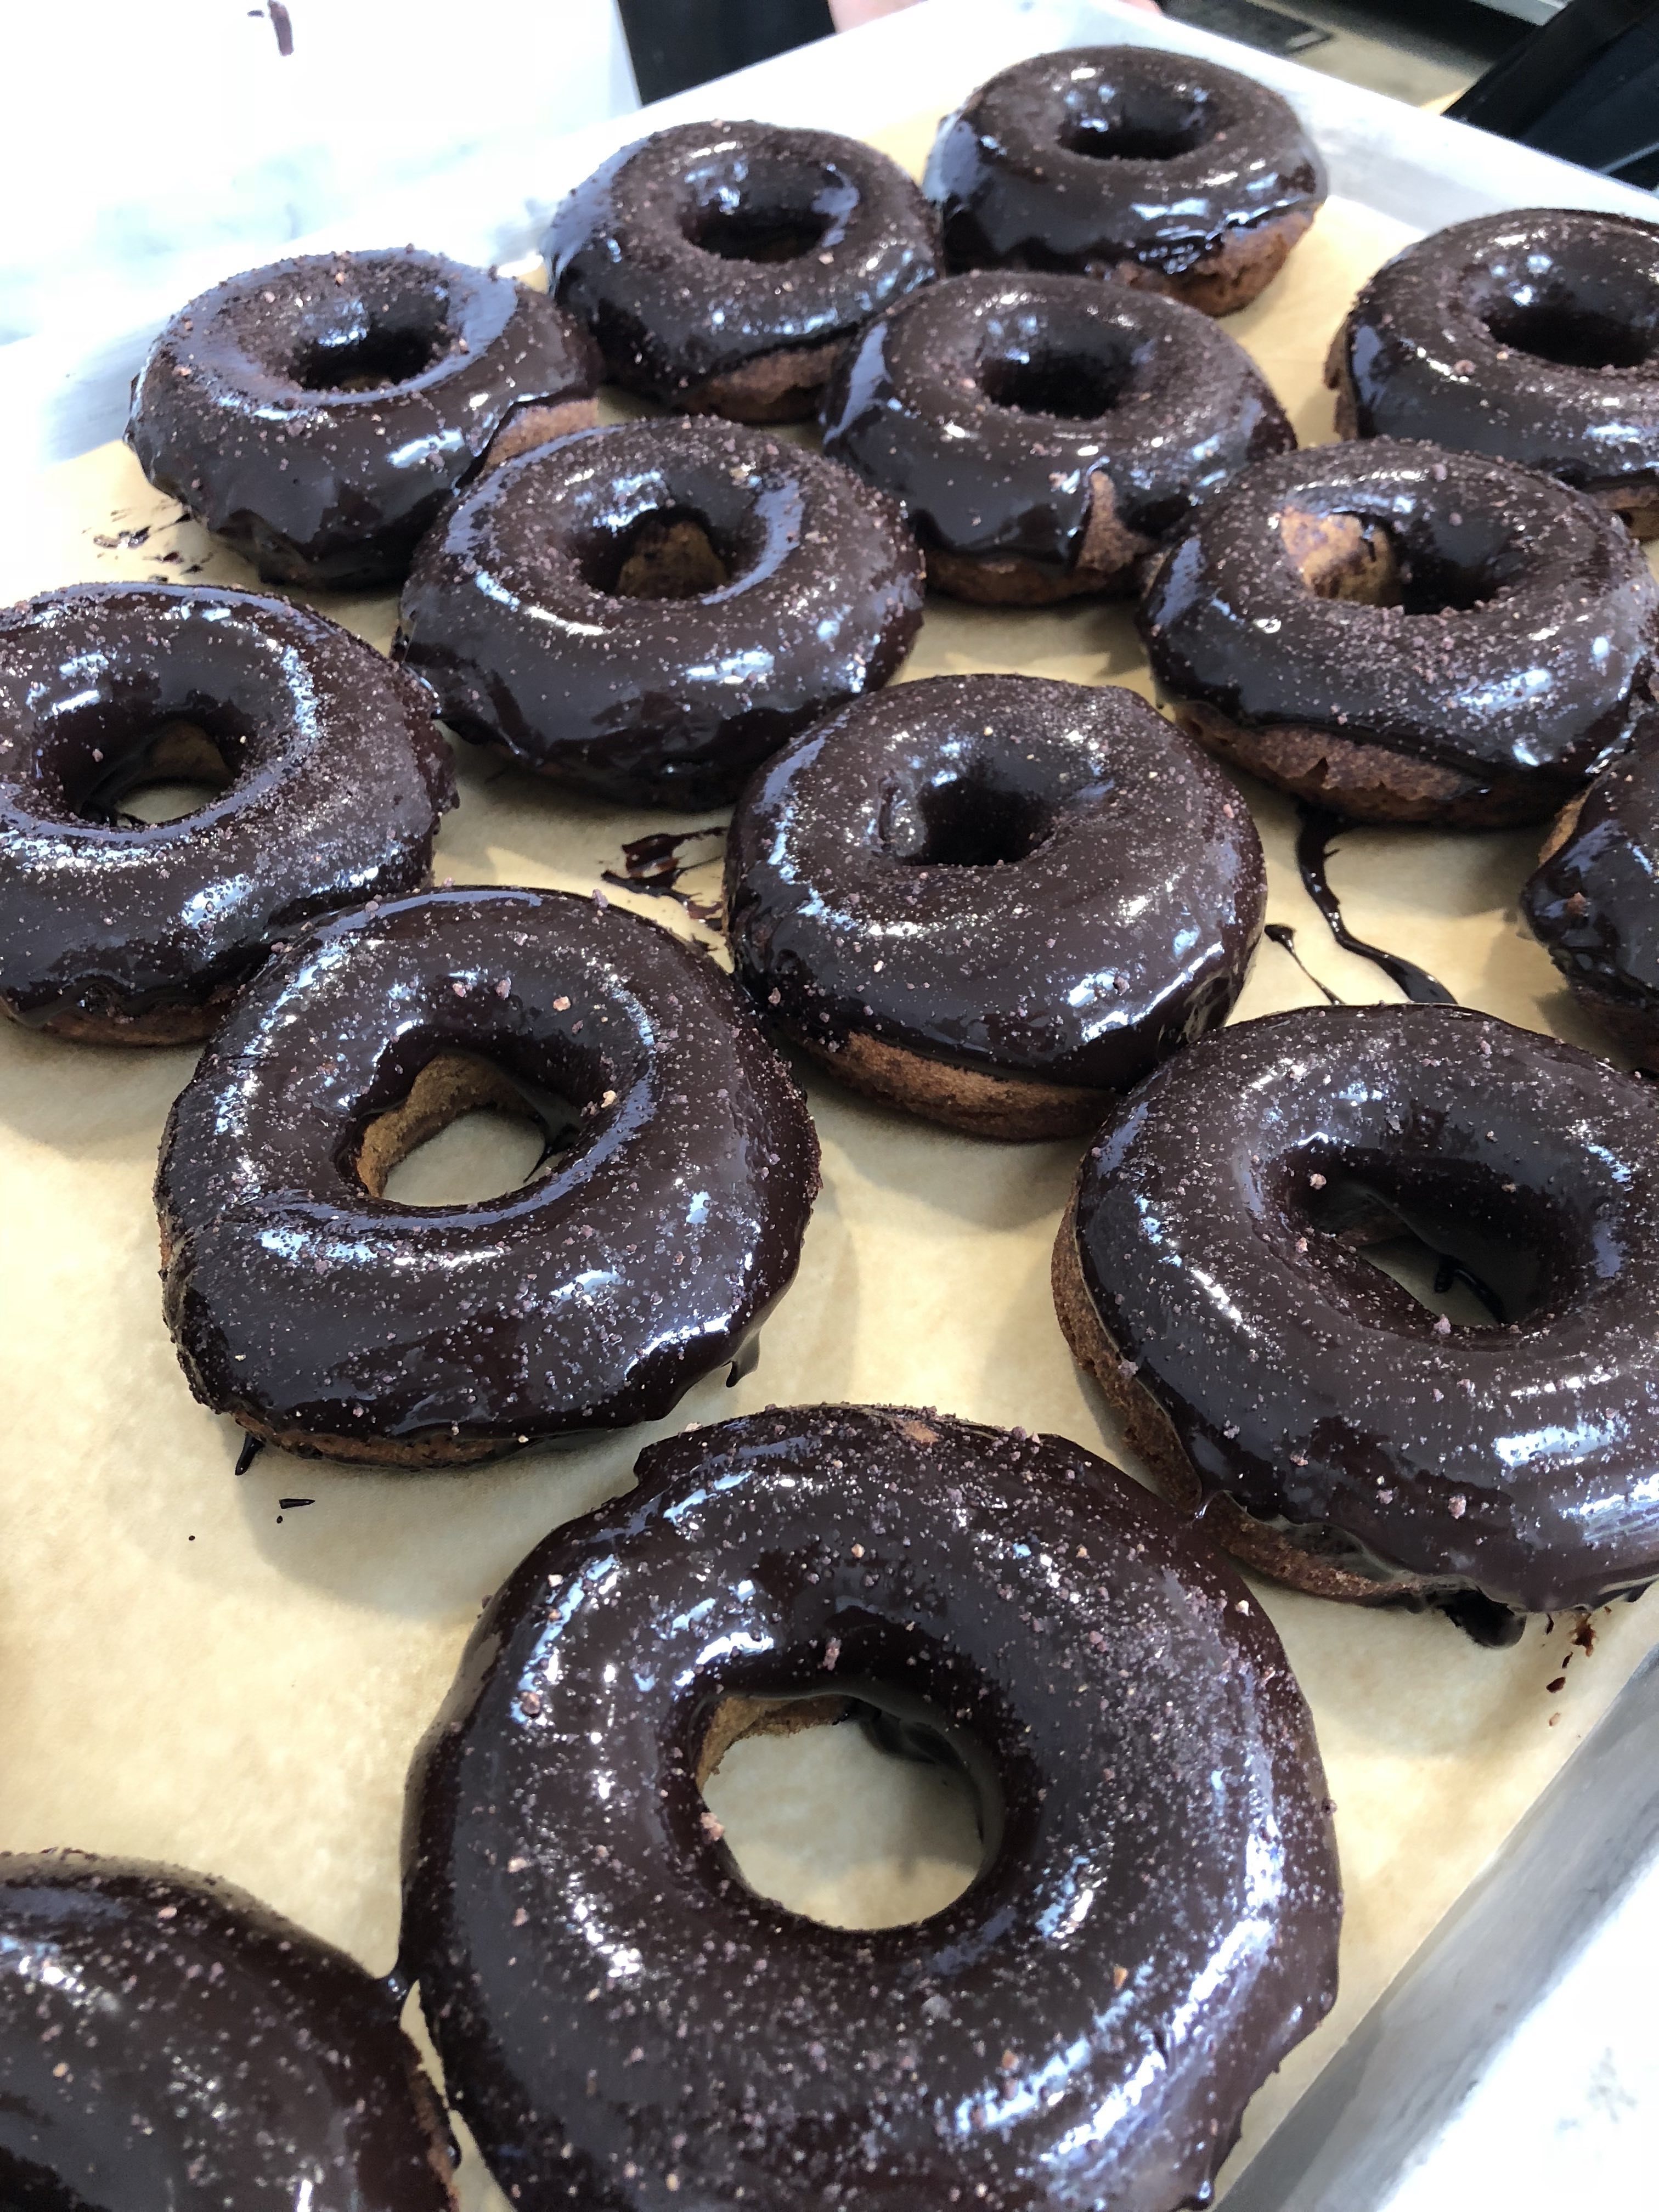 Chocolate glazed donuts